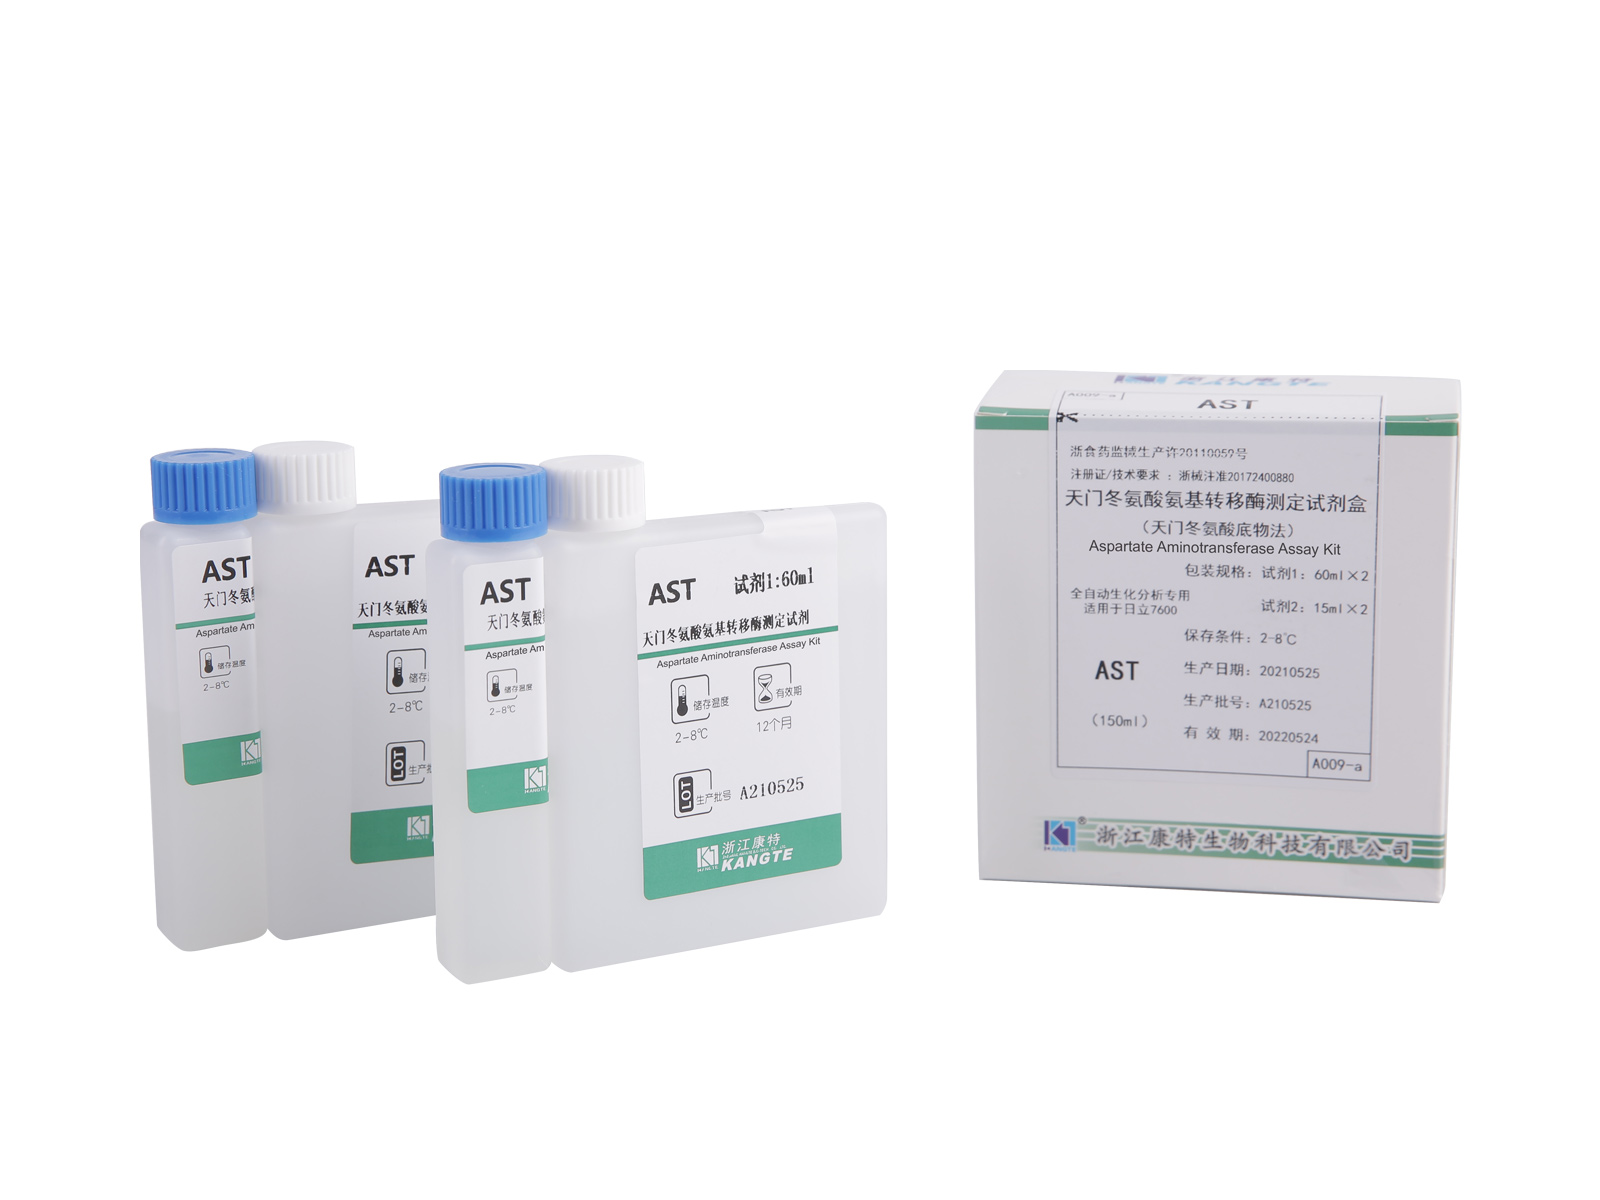 【AST】Aspartate Aminotransferase Assay Kit (Kaedah Substrat Aspartate)